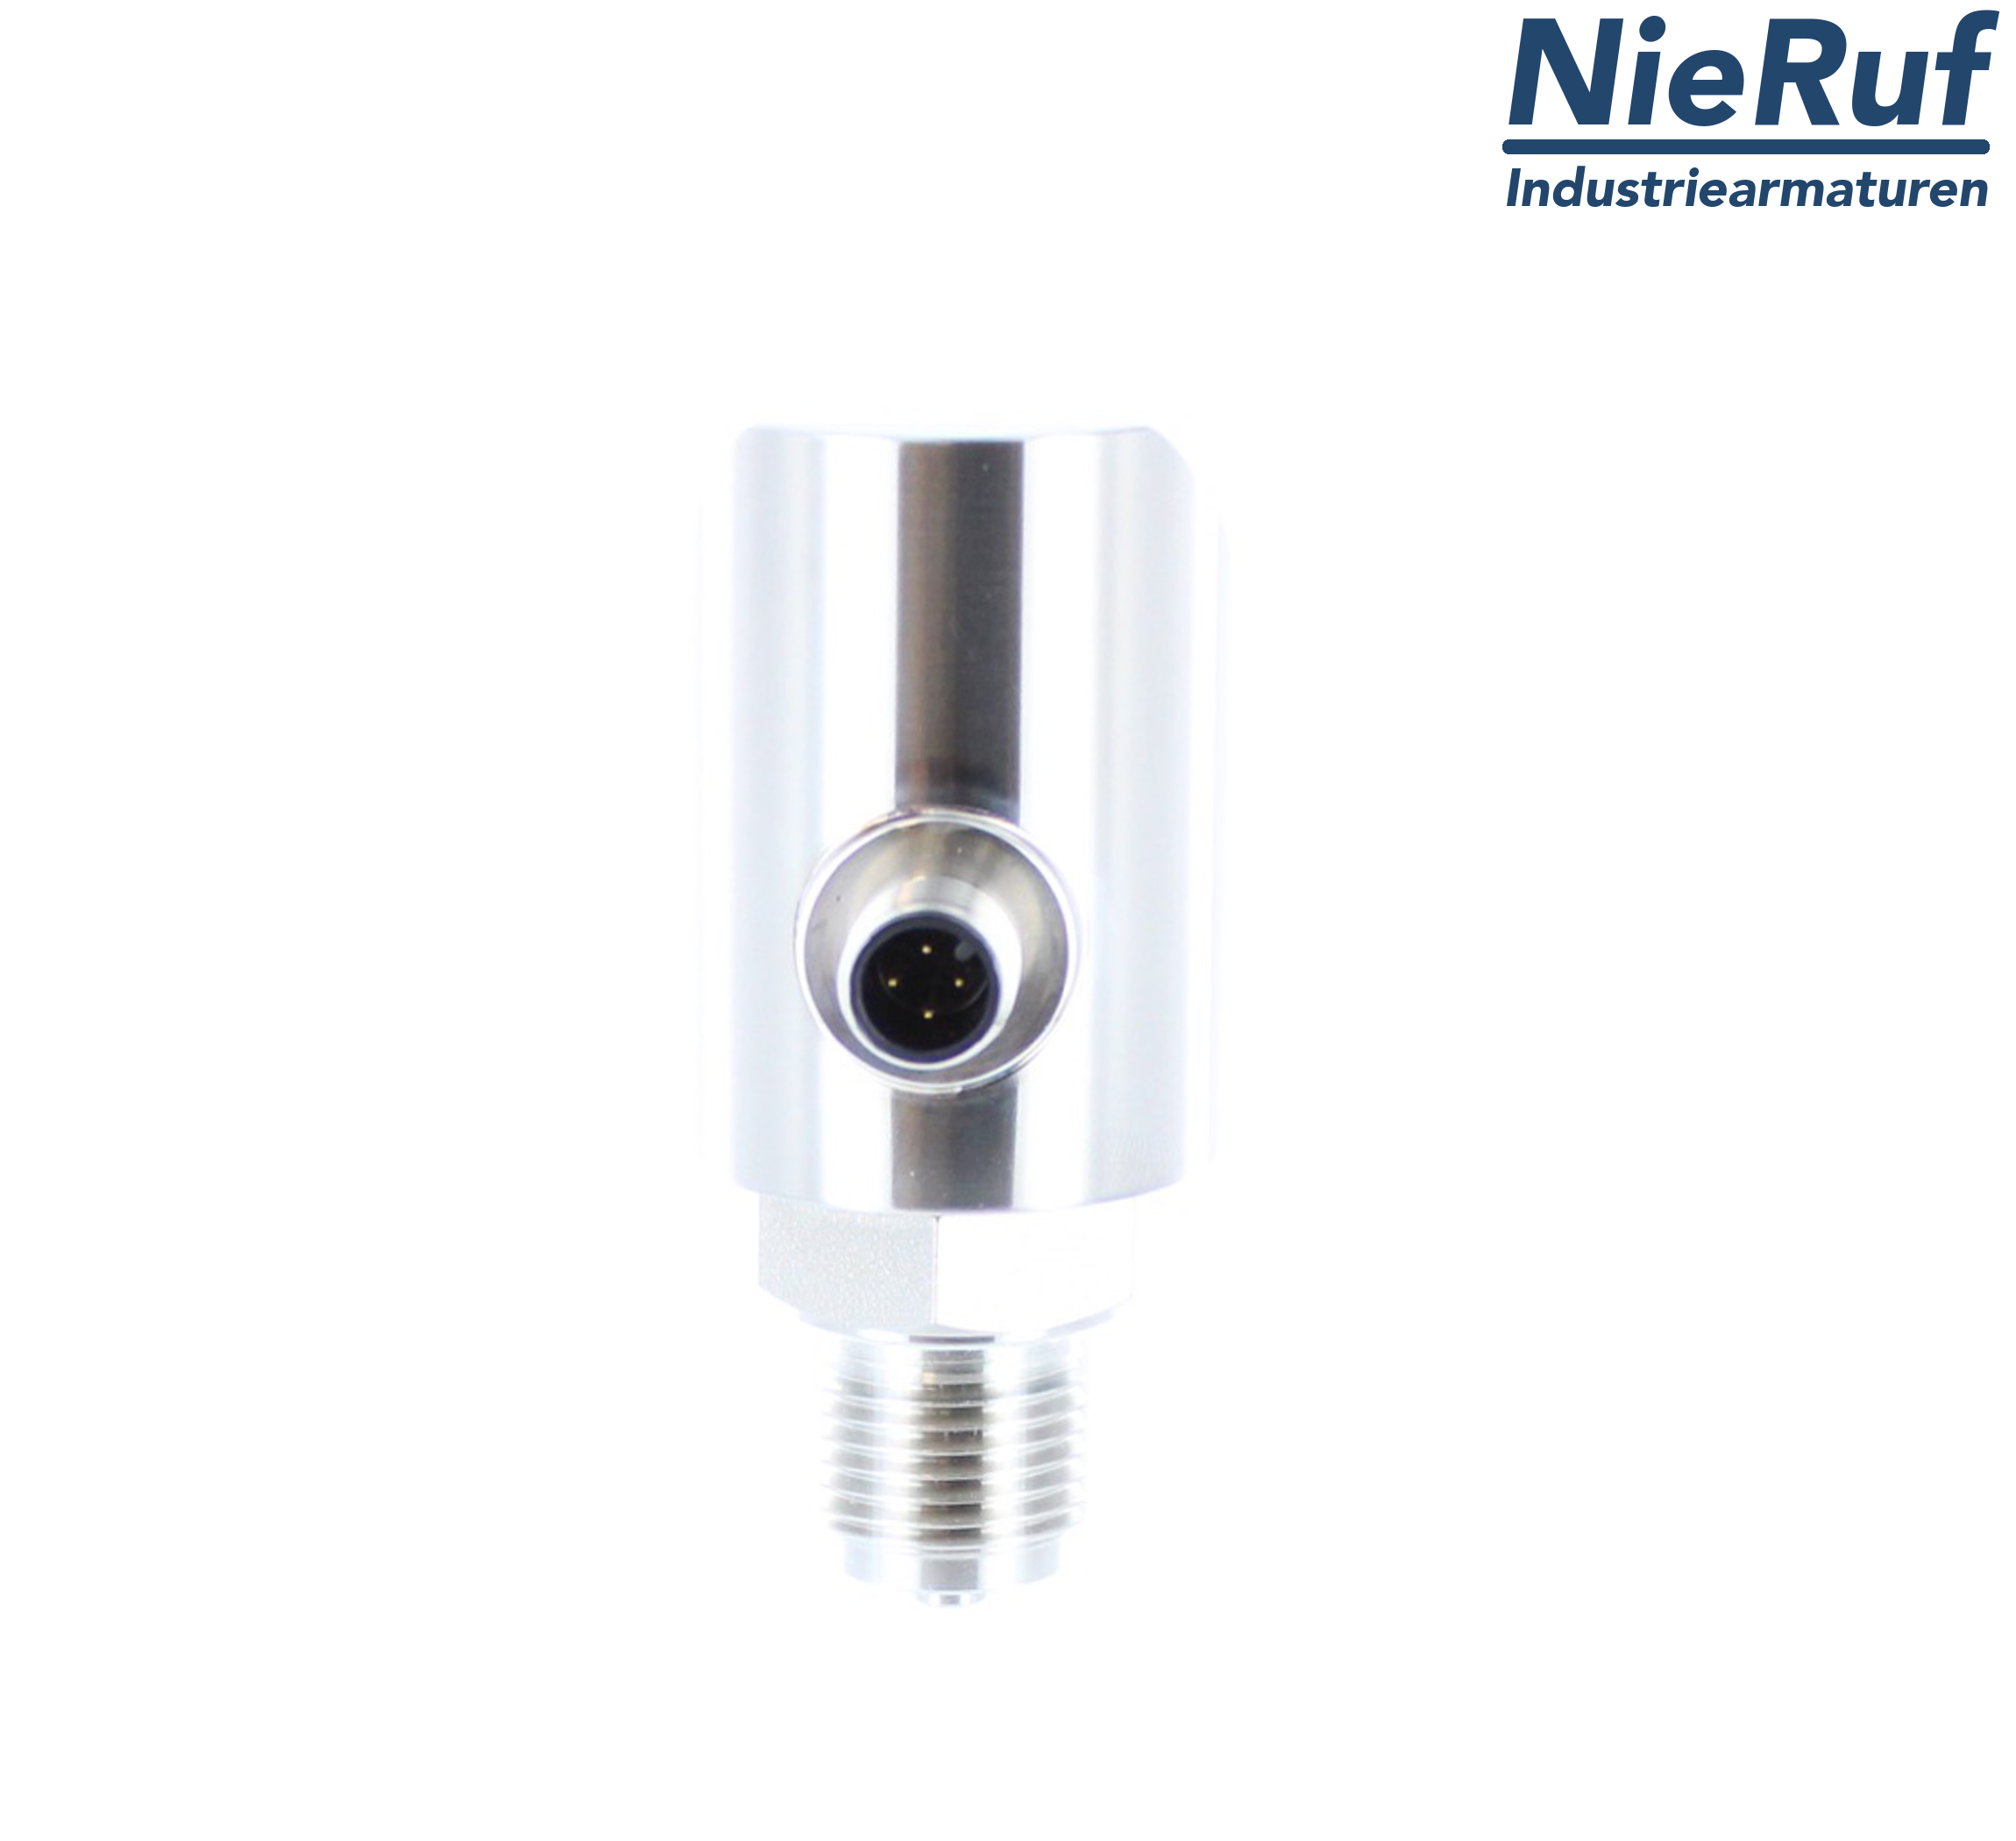 digital pressure sensor G 1/2" B IB 5-wire: 2xPNP, 1x4 - 20mA FPM 0,0 - 1,0 bar